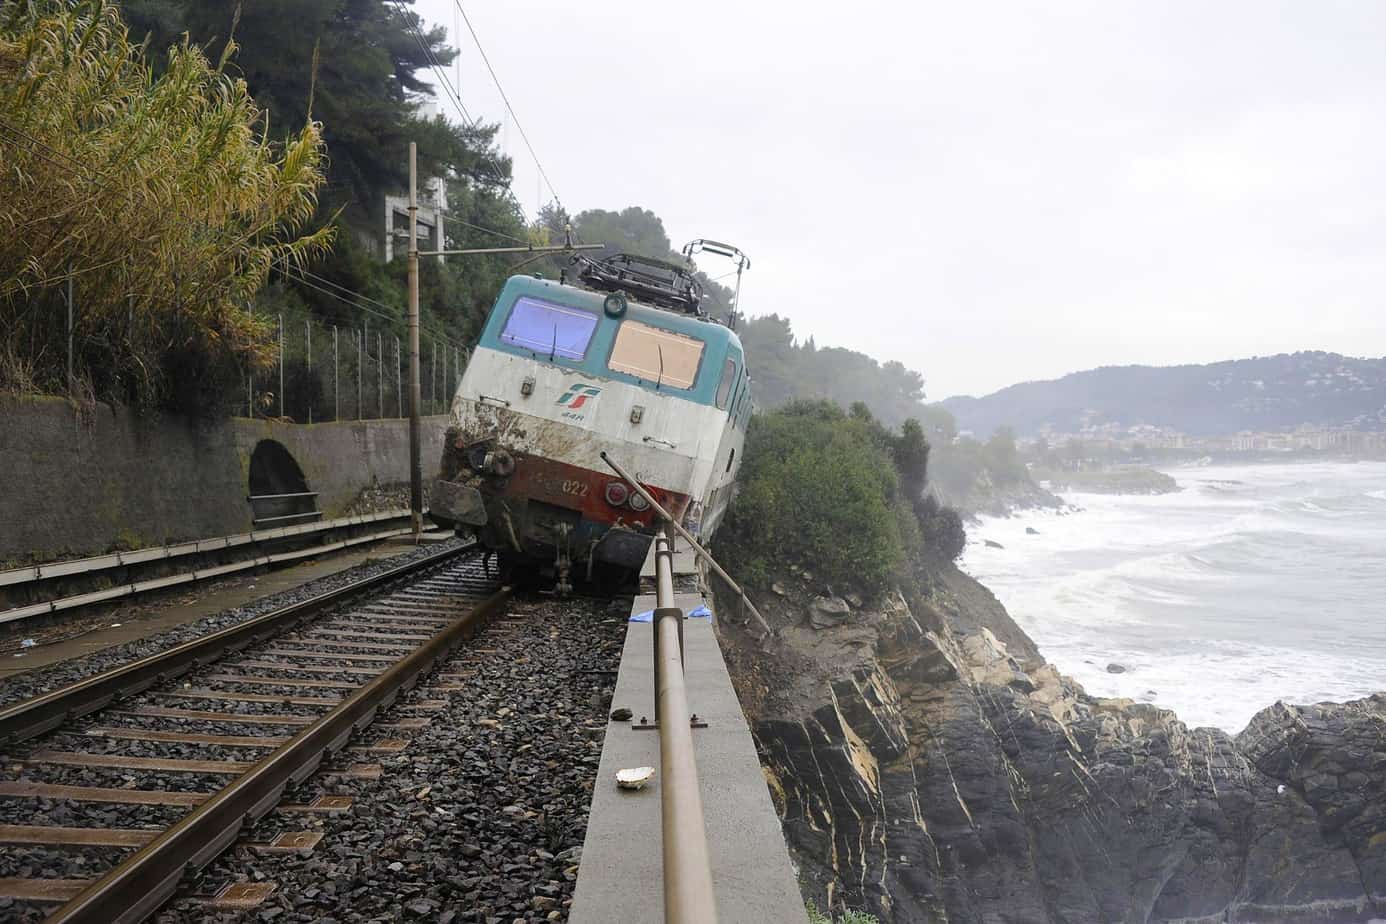 Il treno deragliato ad Andora (Liguria), rimasto in bilico sopra la scogliera con locomotore e carrozze